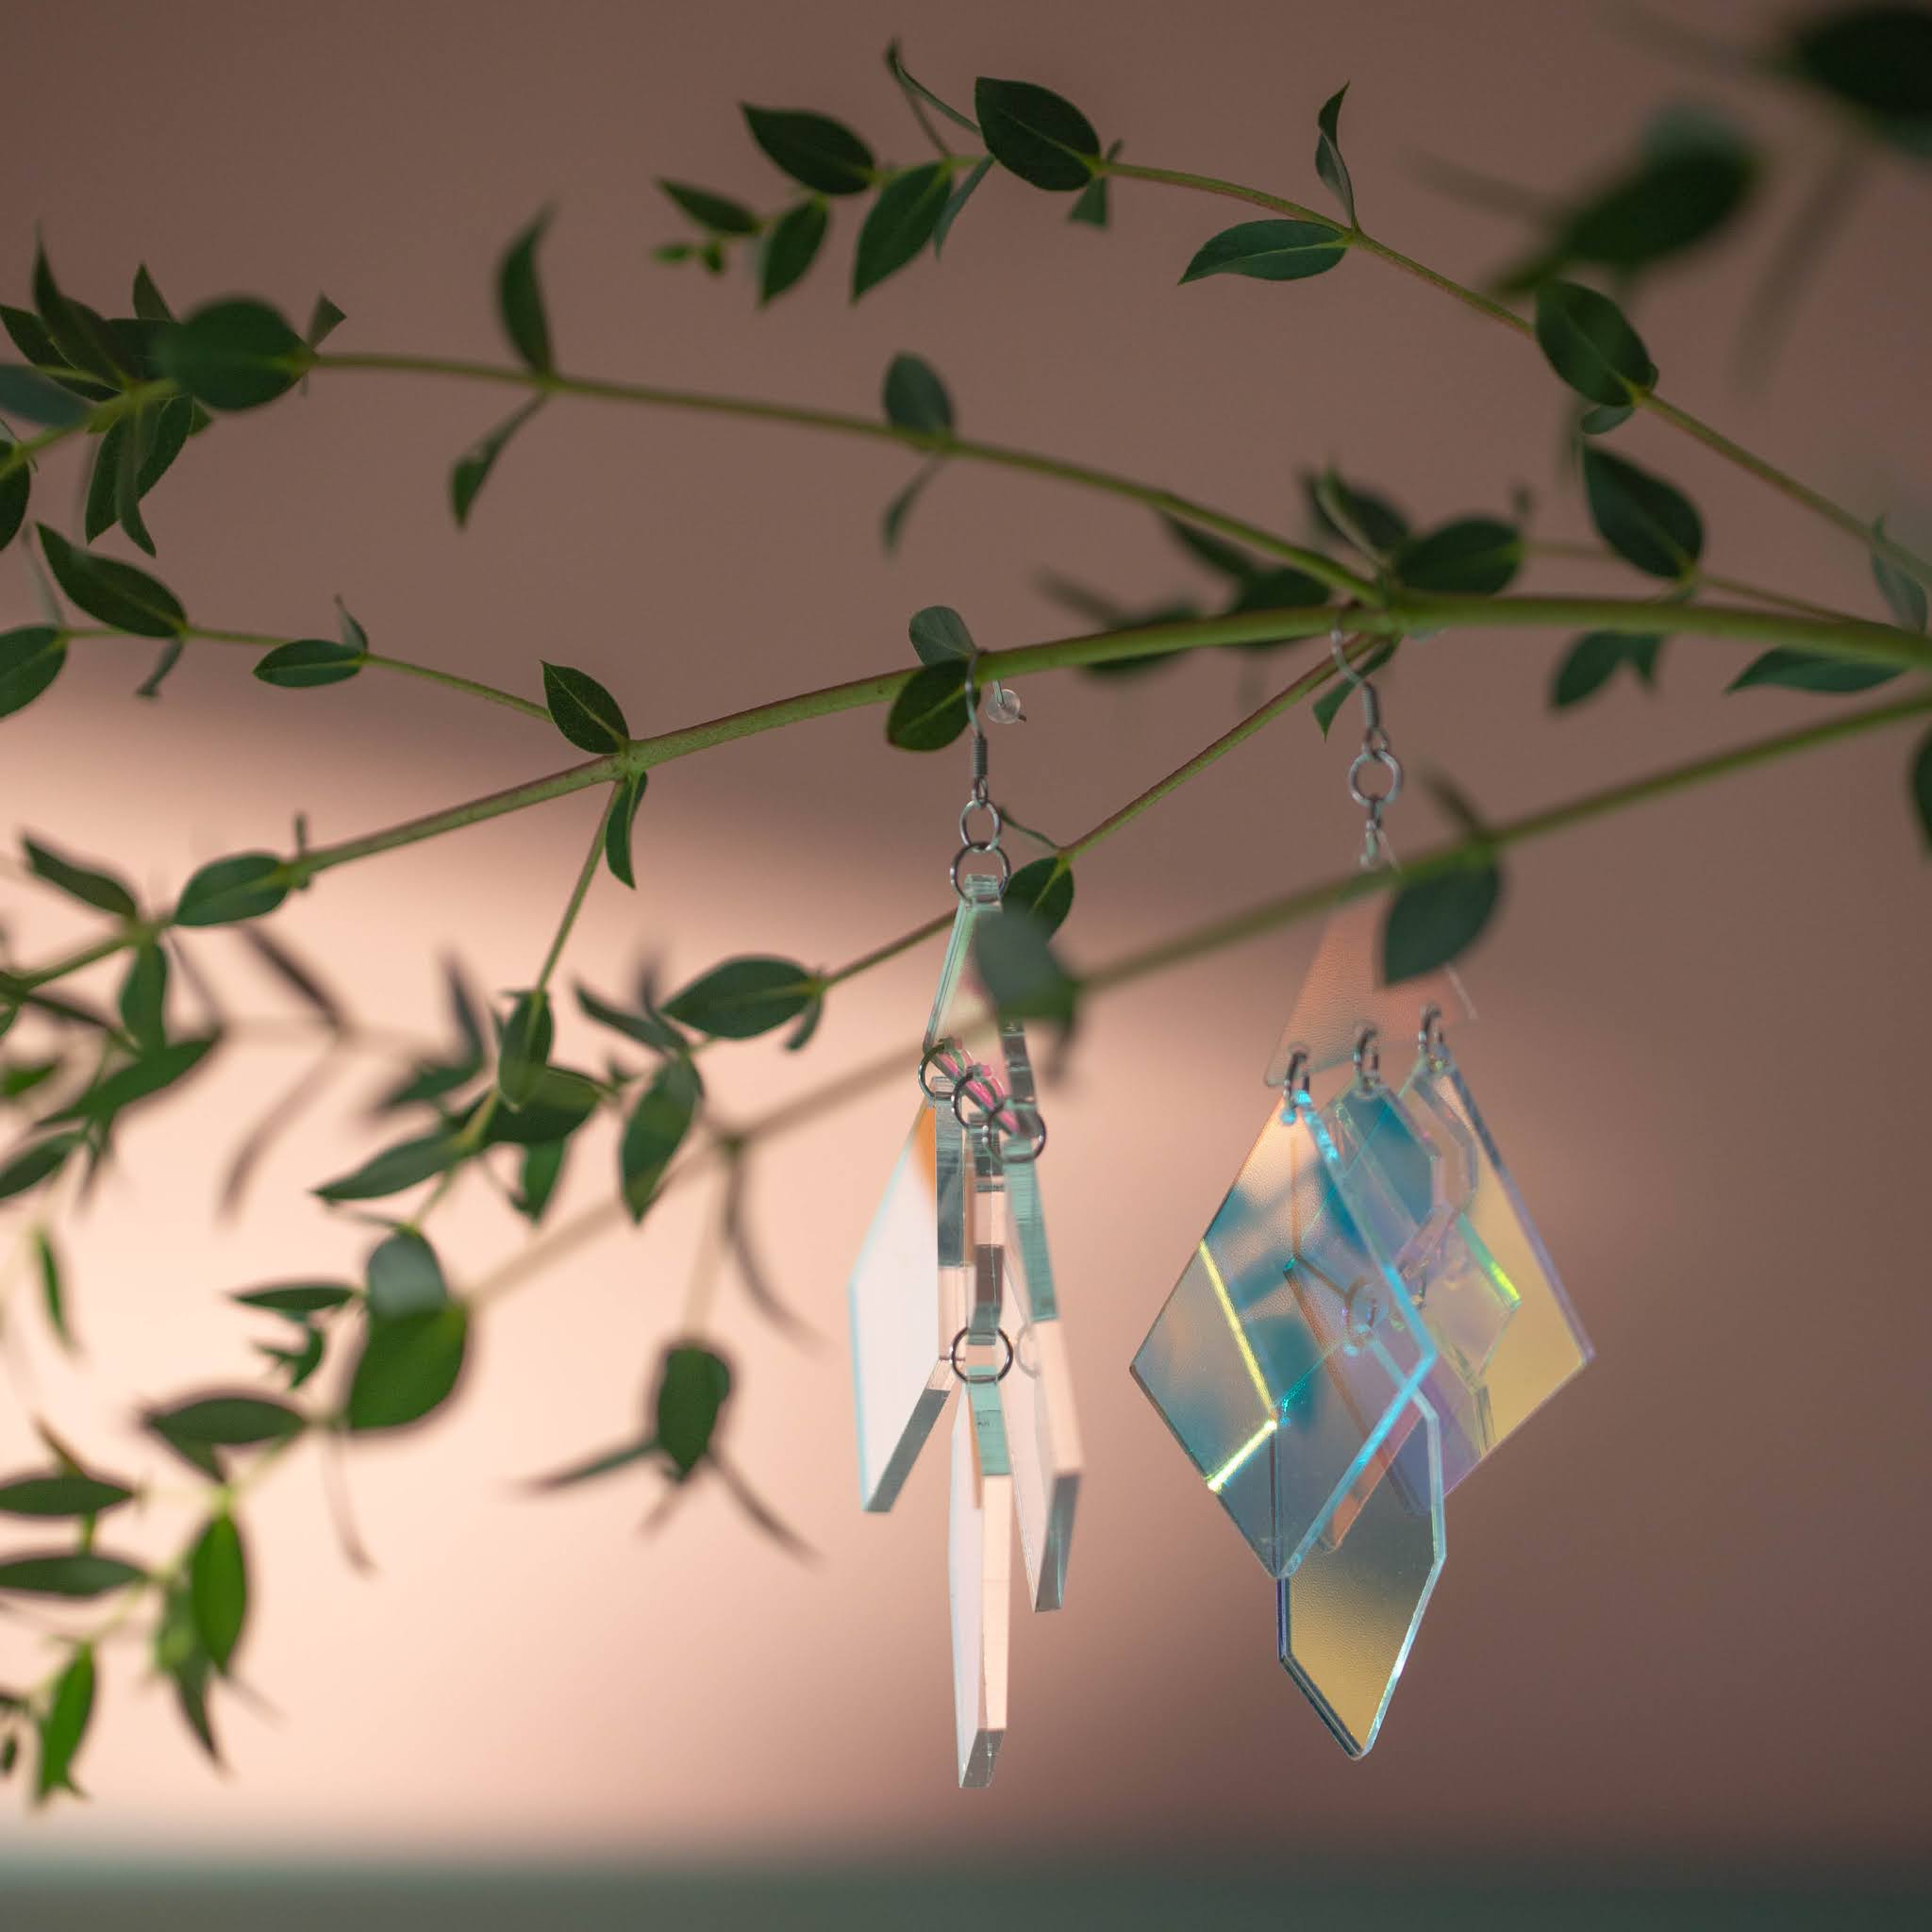 Muoviset, hologrammin lailla heijastelevat korvakorut roikkuvat pieni lehtisen eucalyptuksen oksalla.